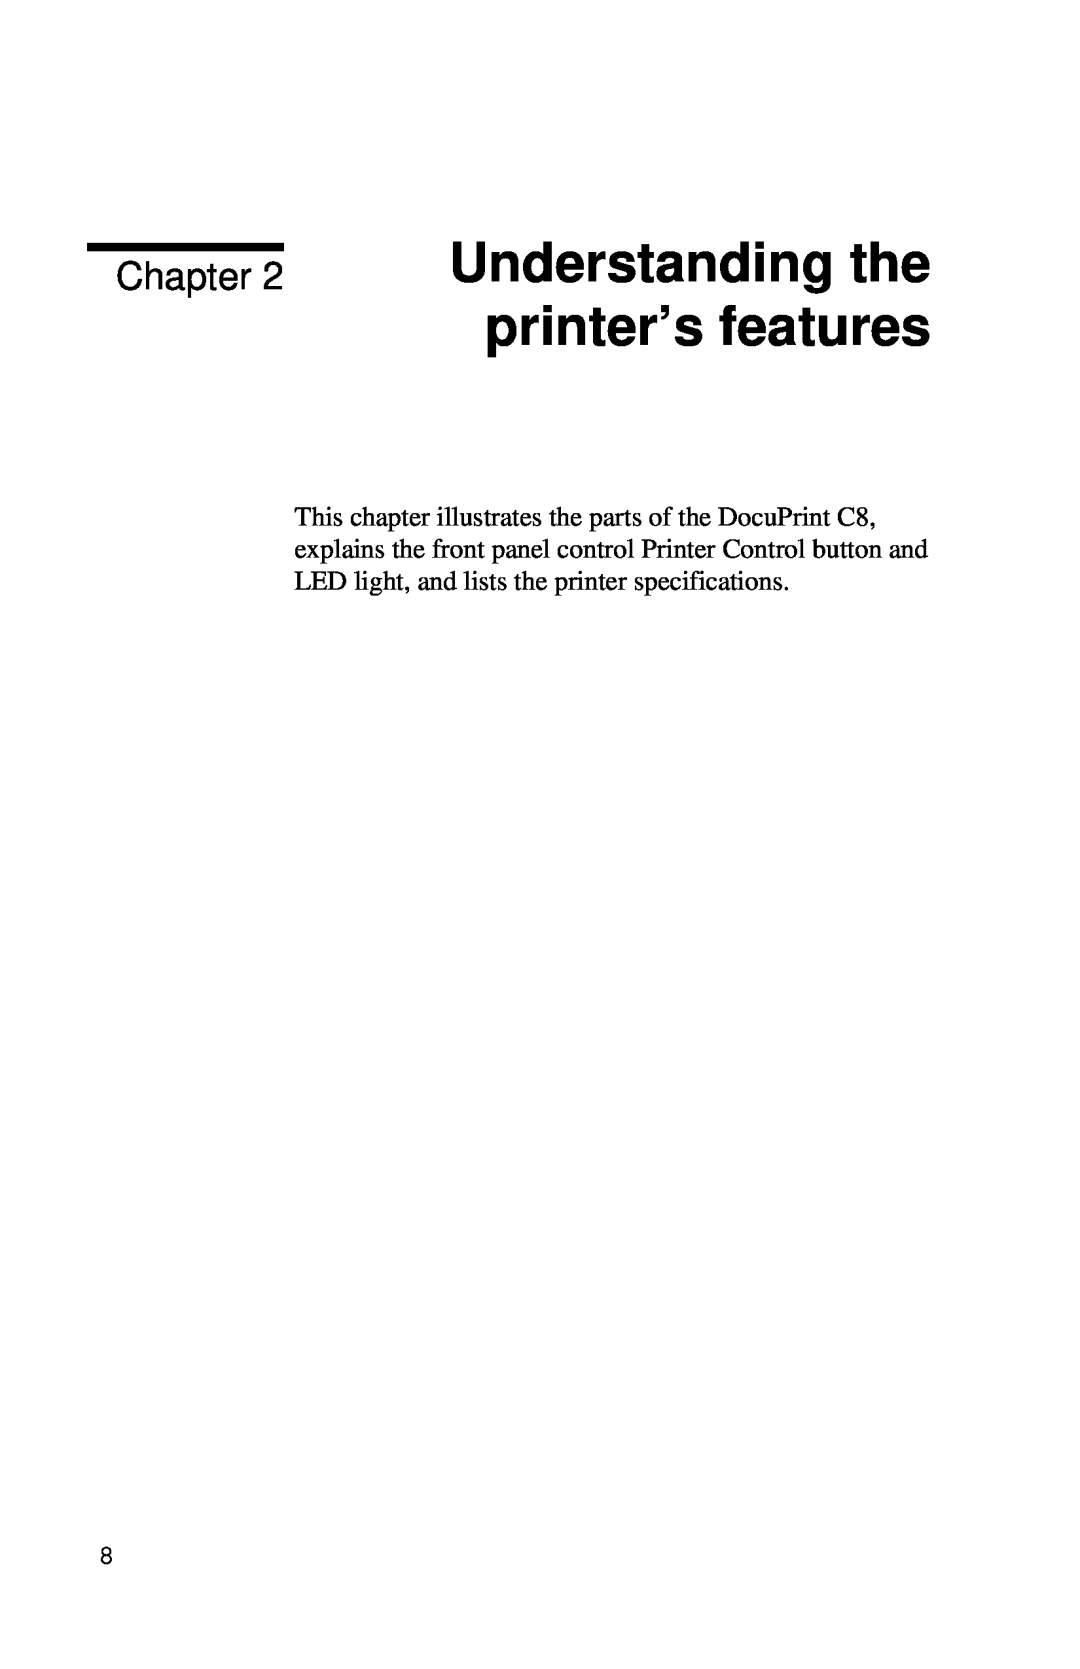 Xerox Inkjet Printer manual Understanding the printer’s features, Chapter 